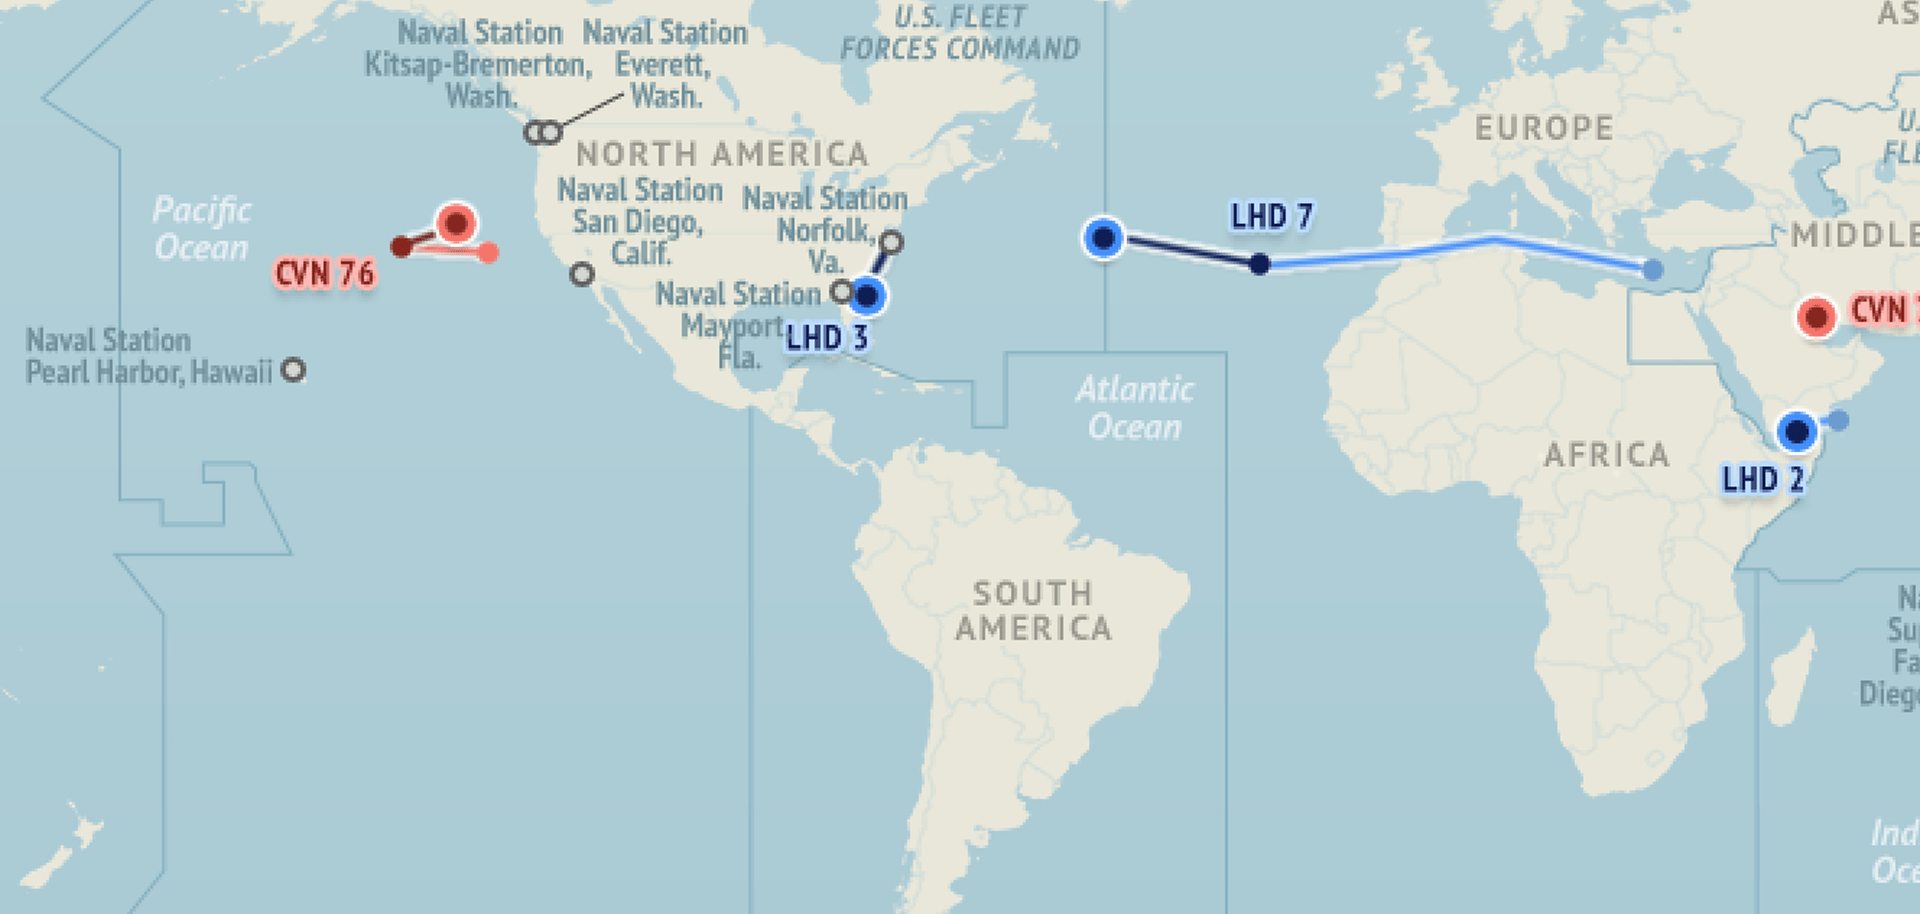 U.S. Naval Update Map: July 16, 2015